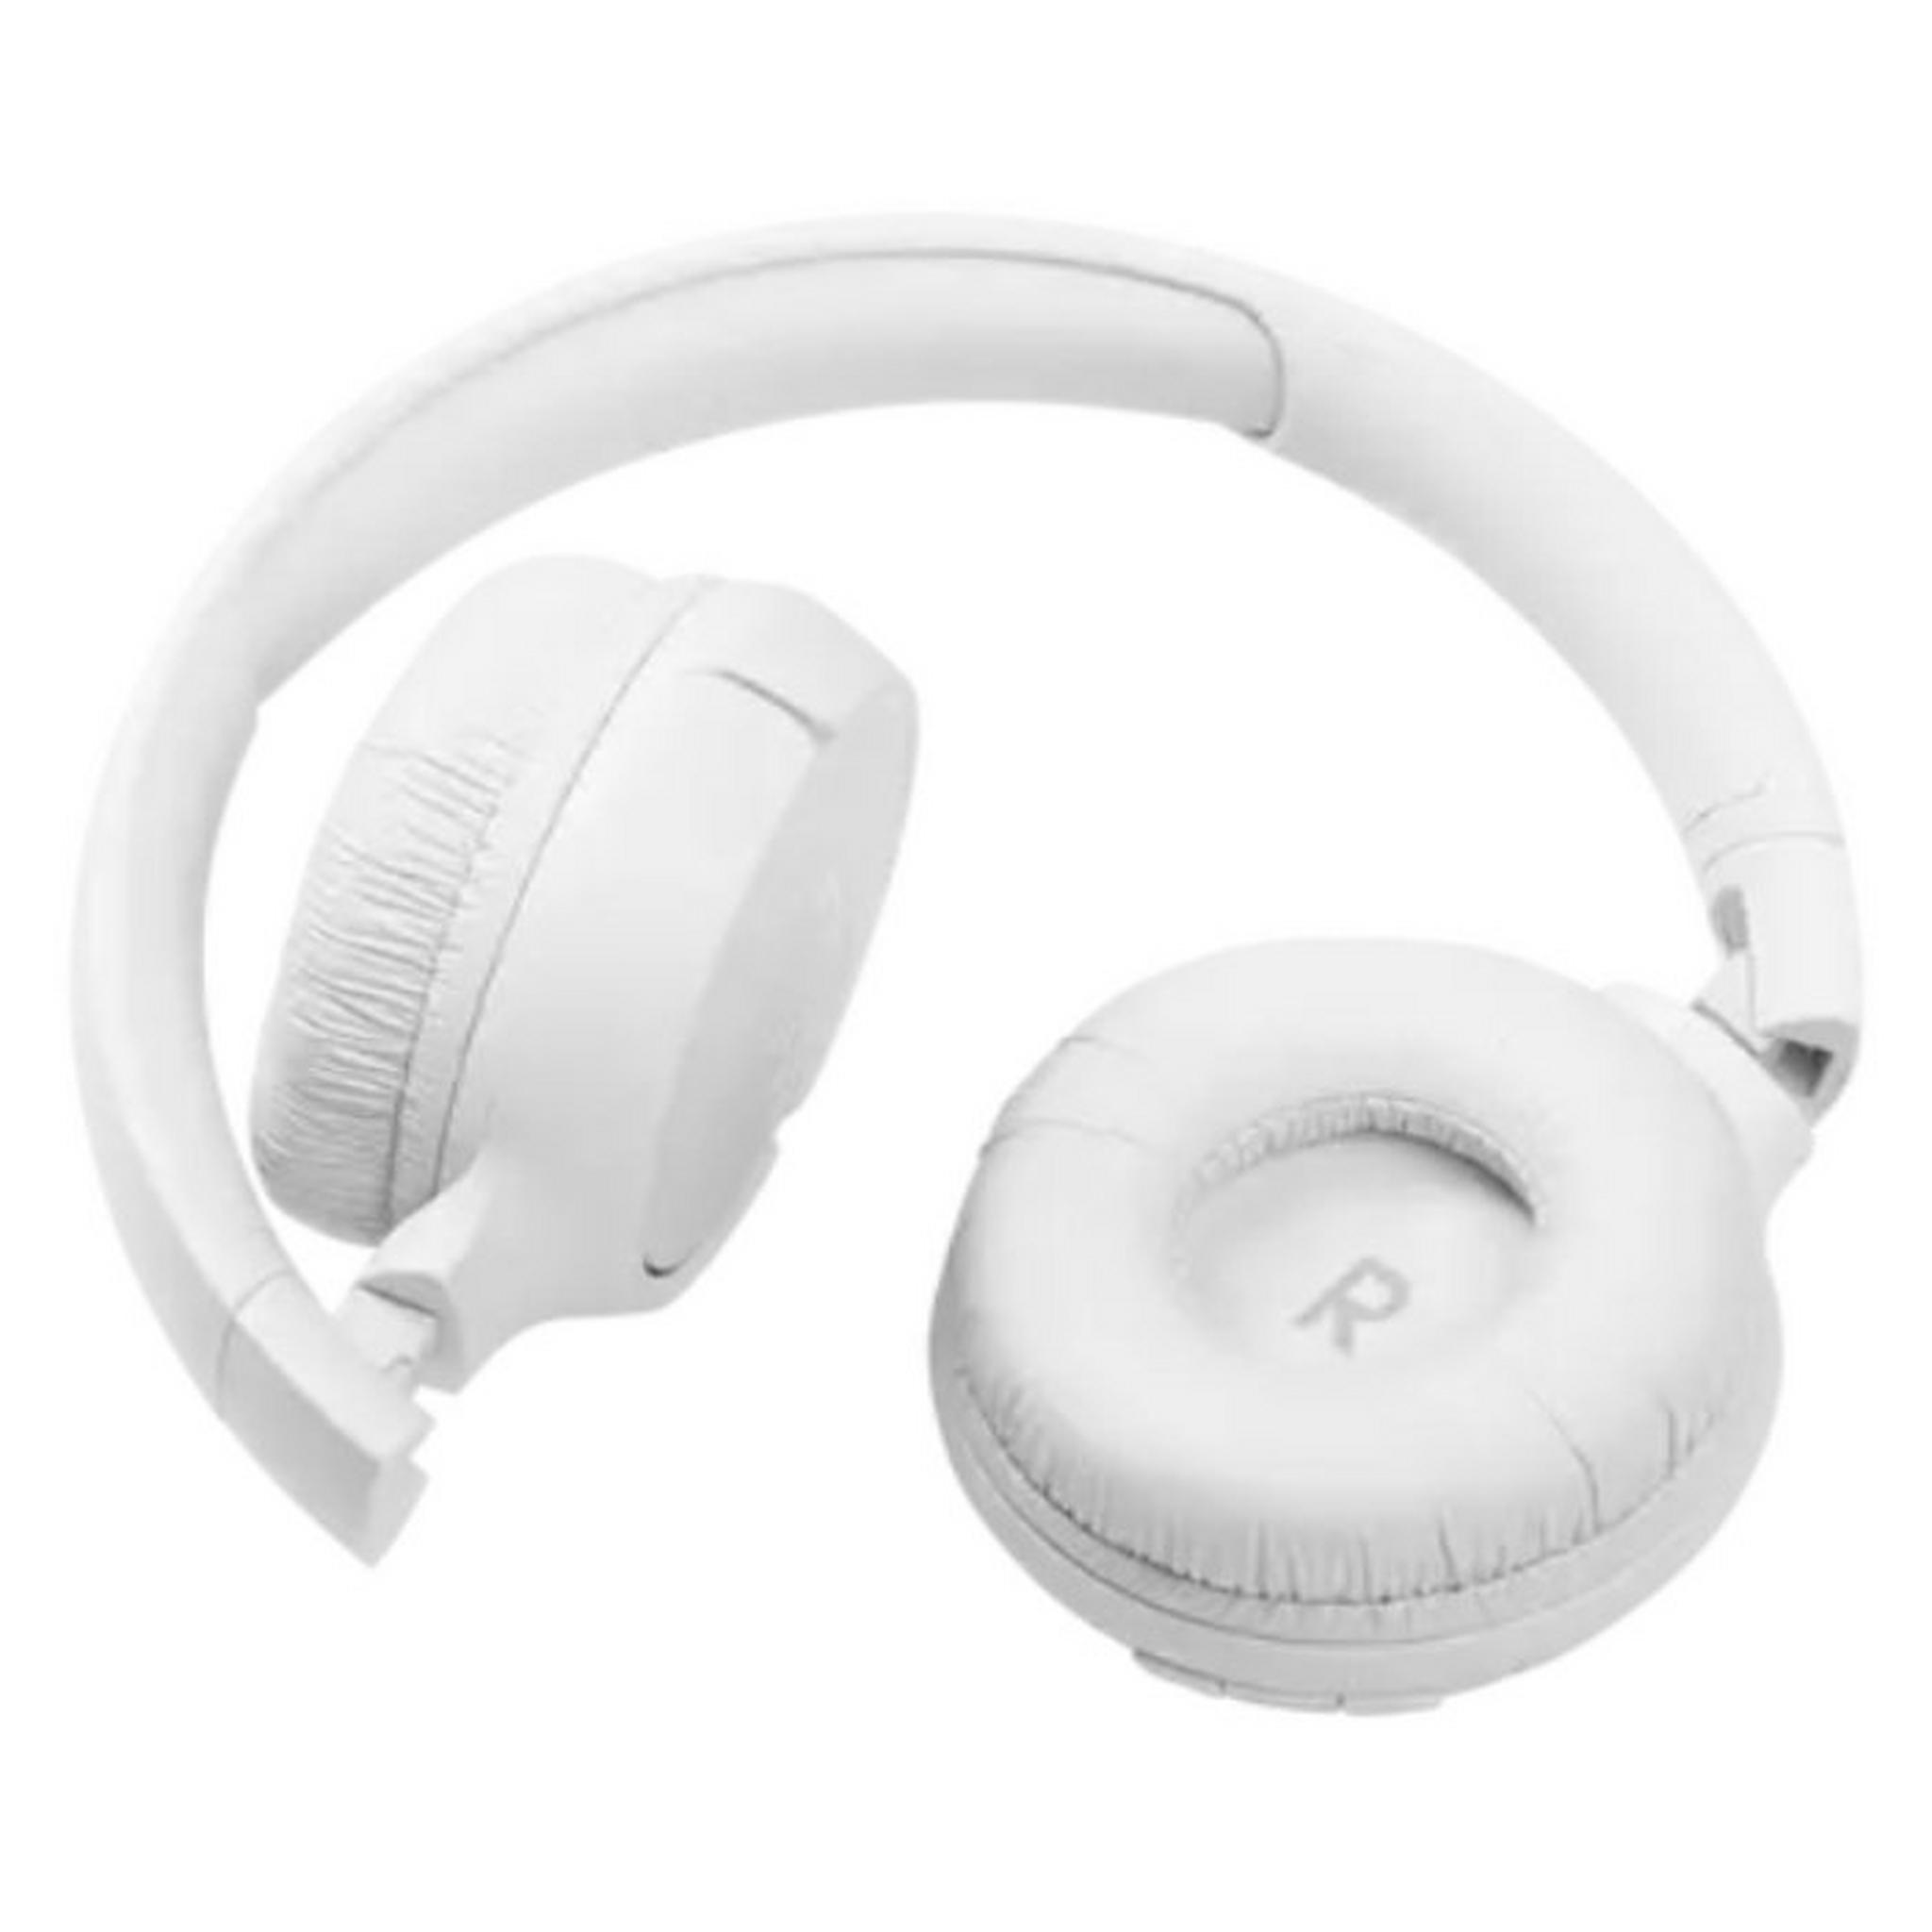 JBL Tune 510BT Wireless On-Ear Headphones - White